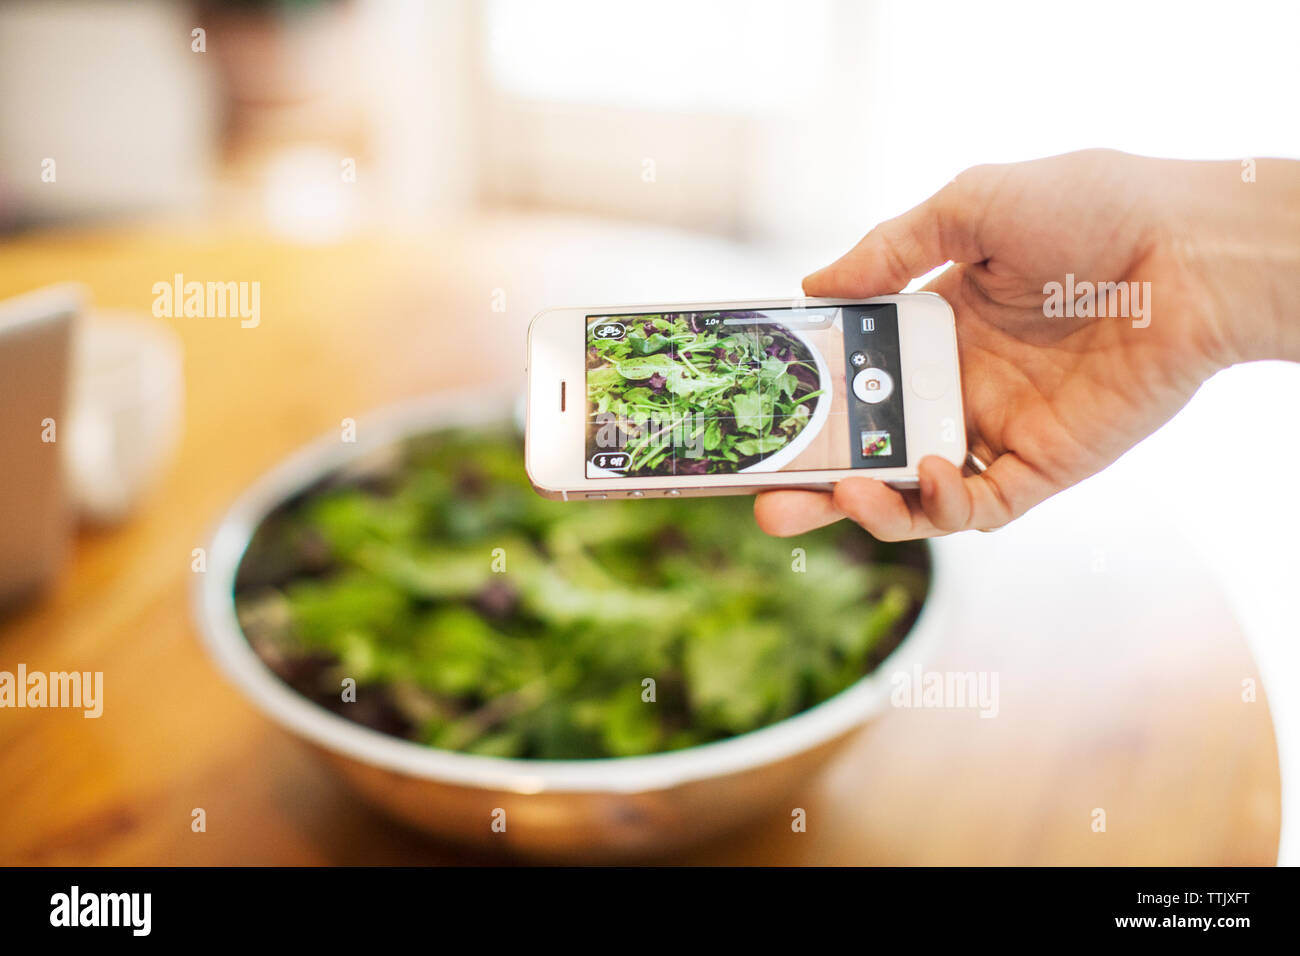 Immagine ritagliata di mano fotografare la verdura a foglia nella ciotola sul tavolo Foto Stock